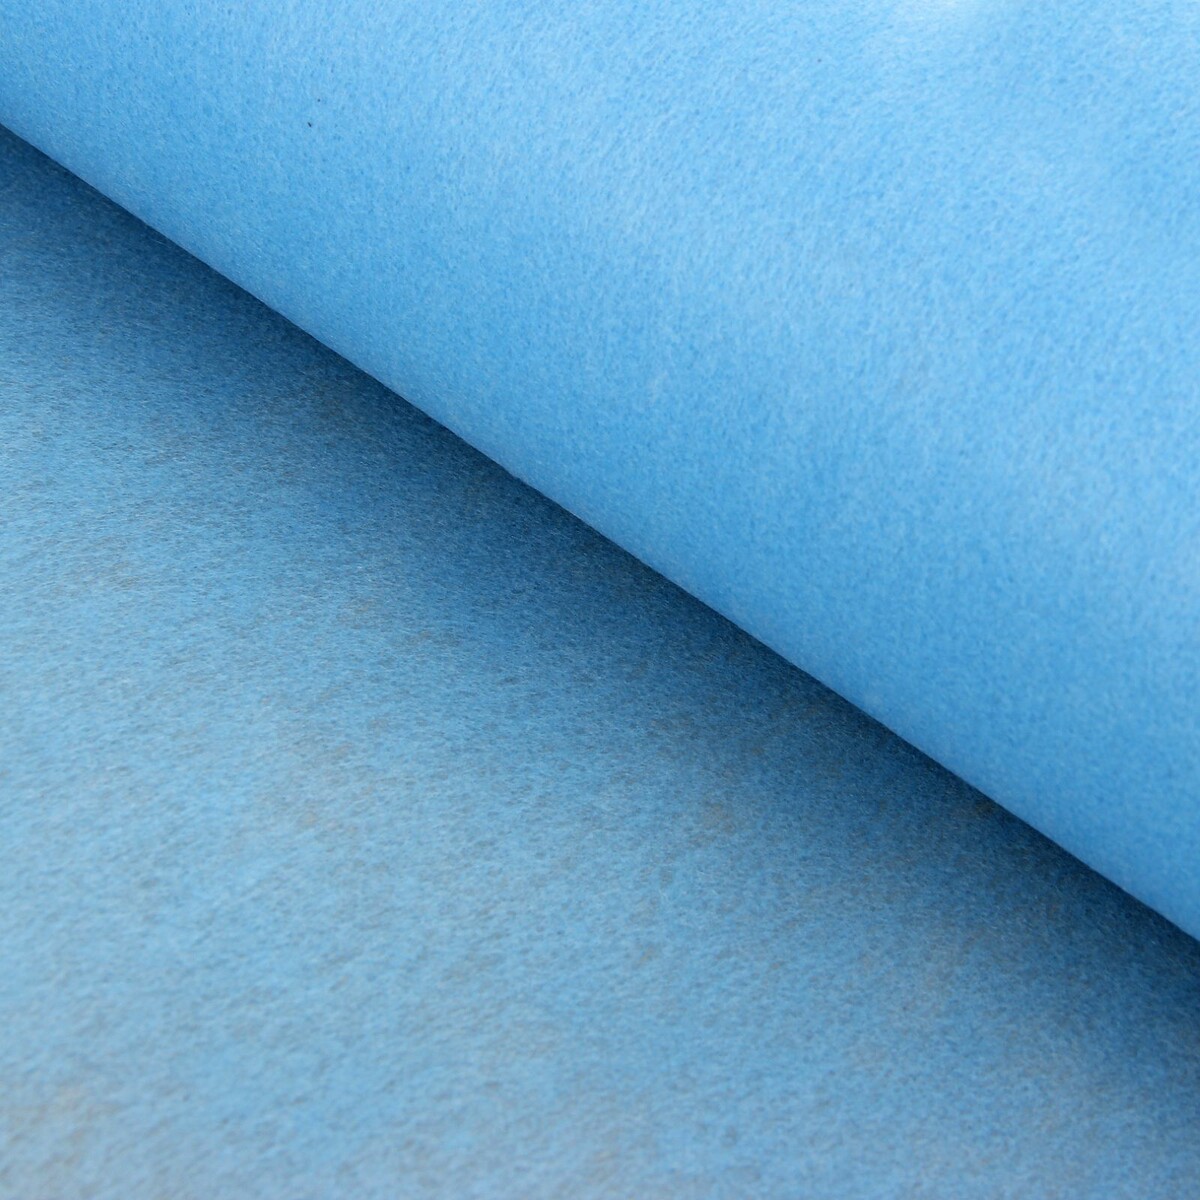 Фетр для упаковок и поделок, однотонный, голубой, двусторонний, рулон 1шт., 50 см x 15 м фетр для декора и флористики однотонный белый двусторонний рулон 1шт 50 см x 15 м